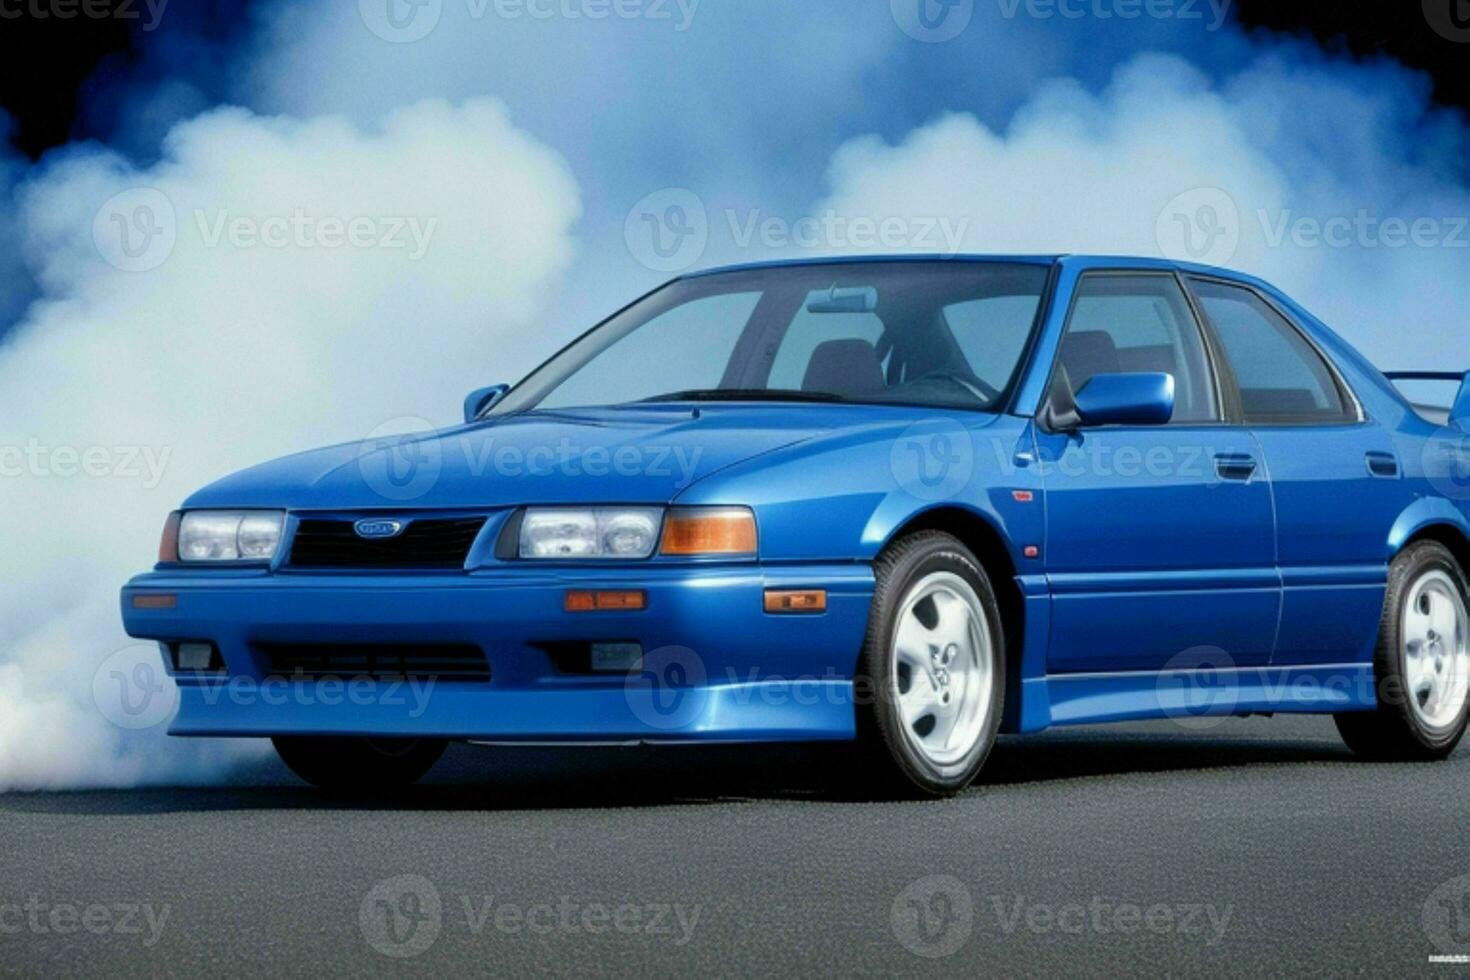 Sport Auto subaru svx 1990 jdm. Profi Foto